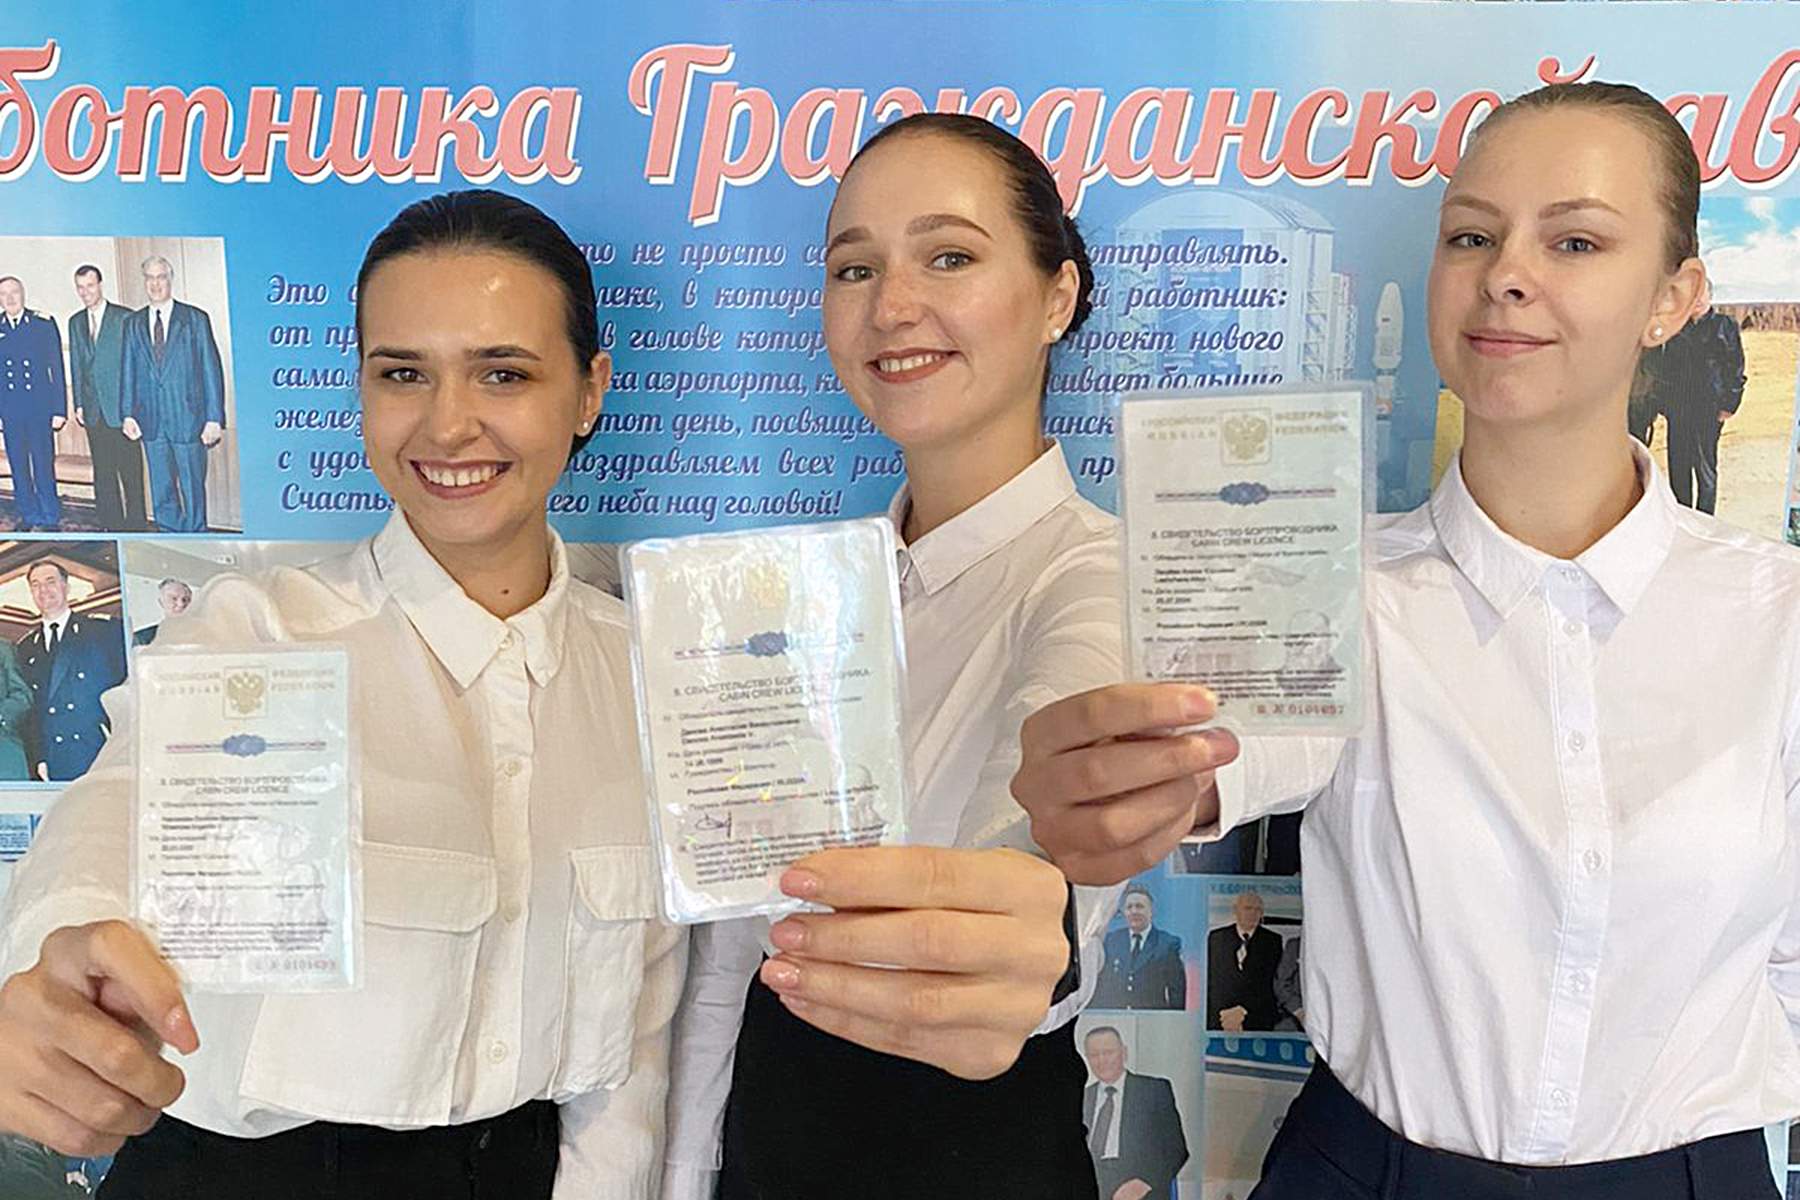 Студентки ВГУЭС завершили обучение в Авиационном учебном центре авиакомпании «Аврора» и получили работу своей мечты